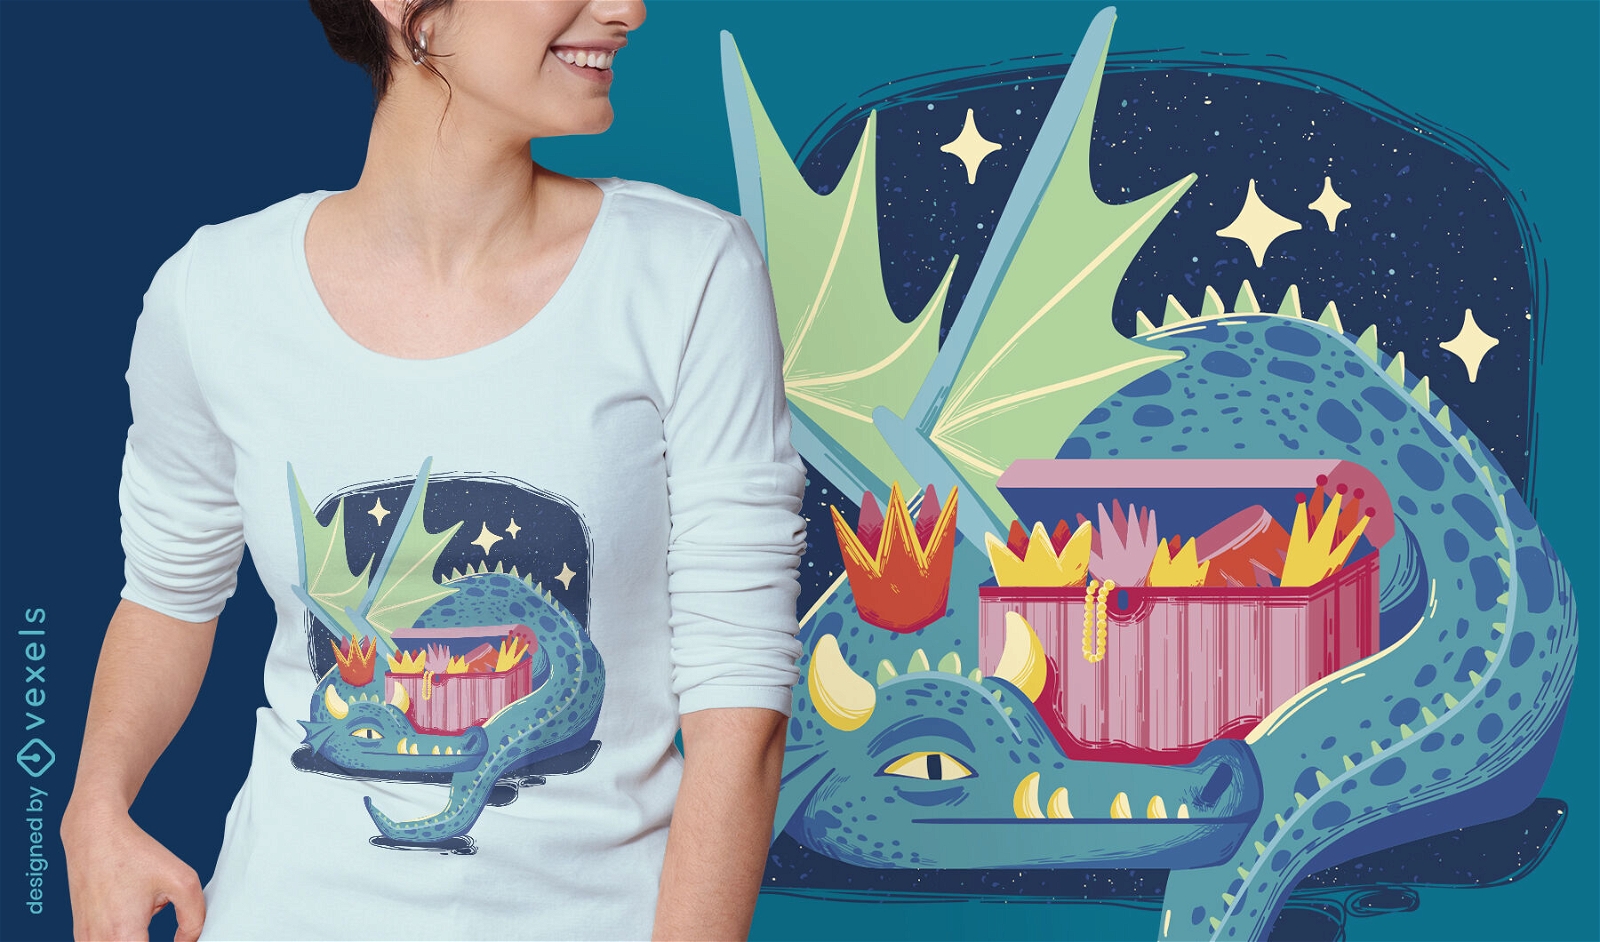 Diseño de camiseta rey dragón de cuento de hadas.